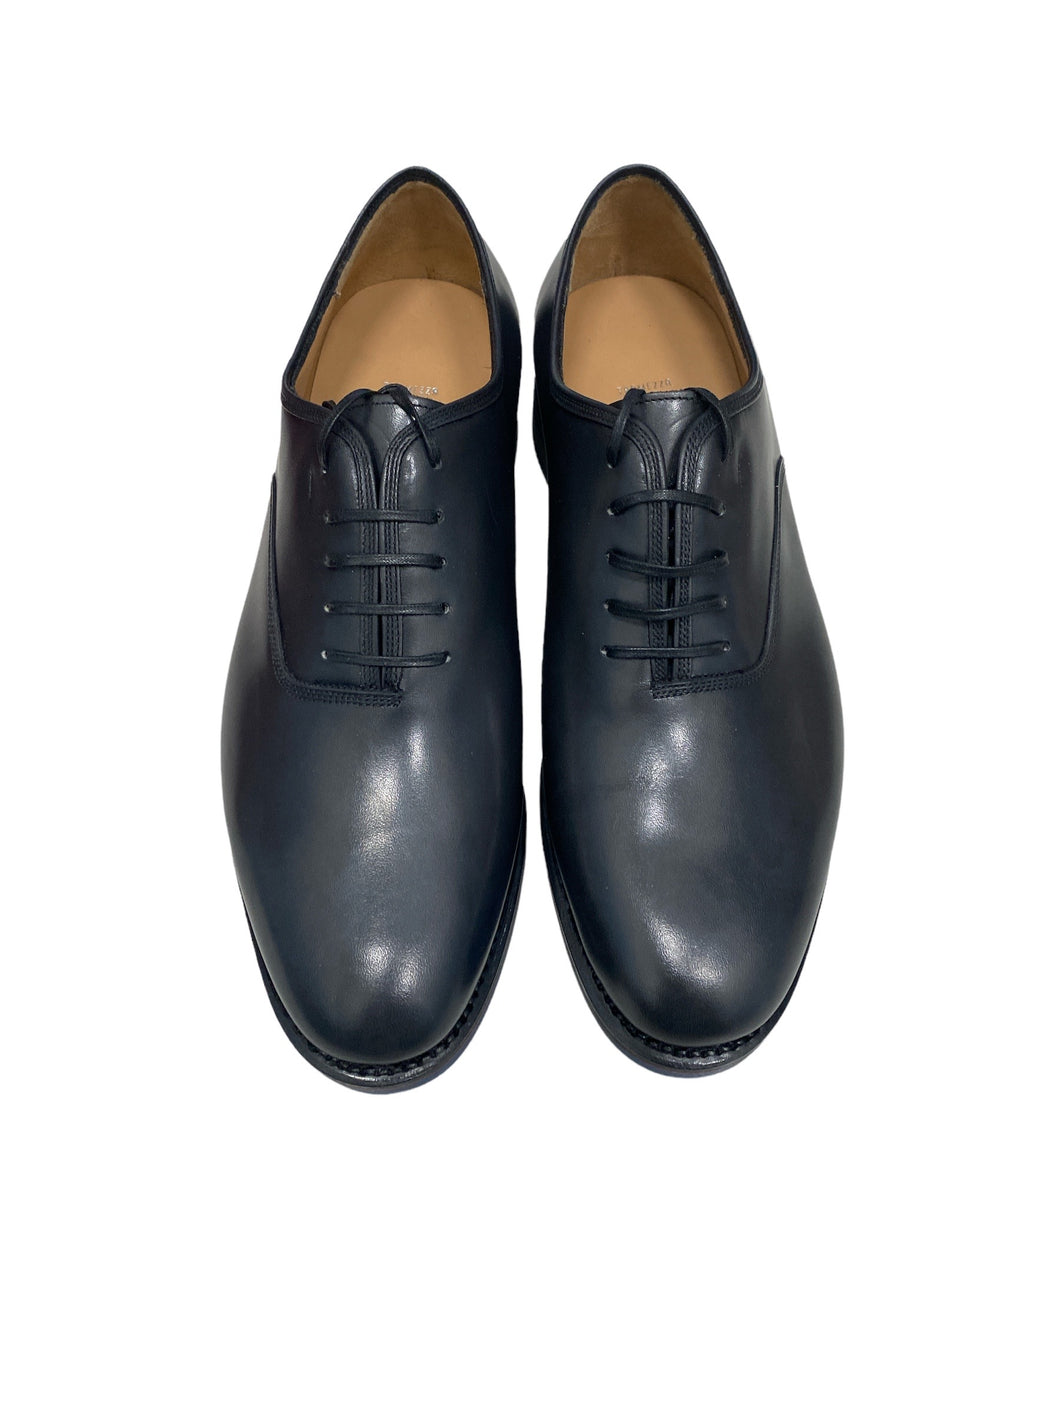 NEW SALVATORE FERRAGAMO Fondatore Men's 620881 Black Shoe Size 8 EEE MSRP $1010